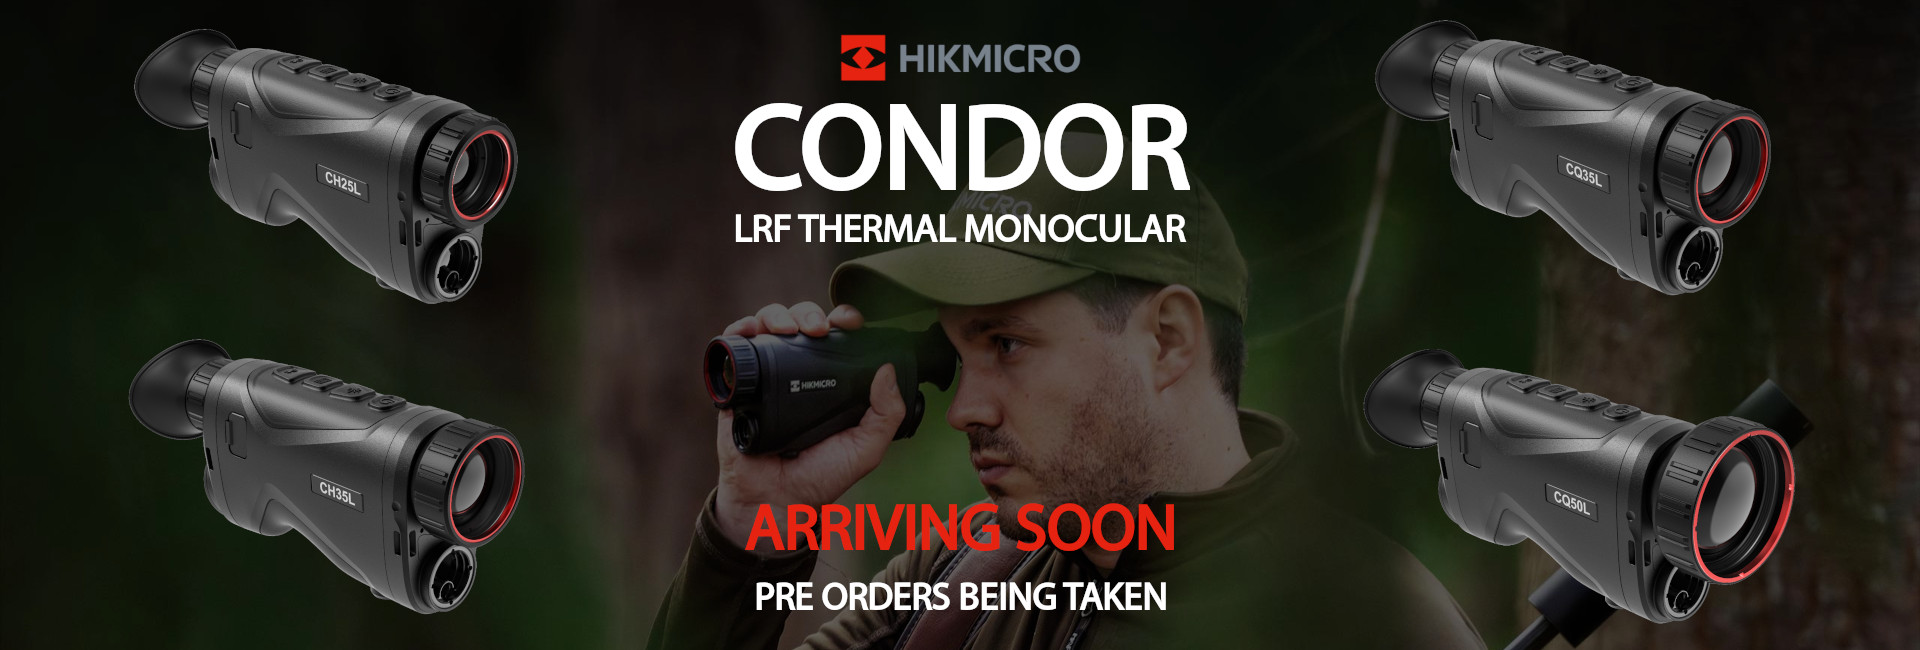 HIKMICRO CONDOR LRF Thermal Monocular Arriving Soon - Pre Orders Being Taken